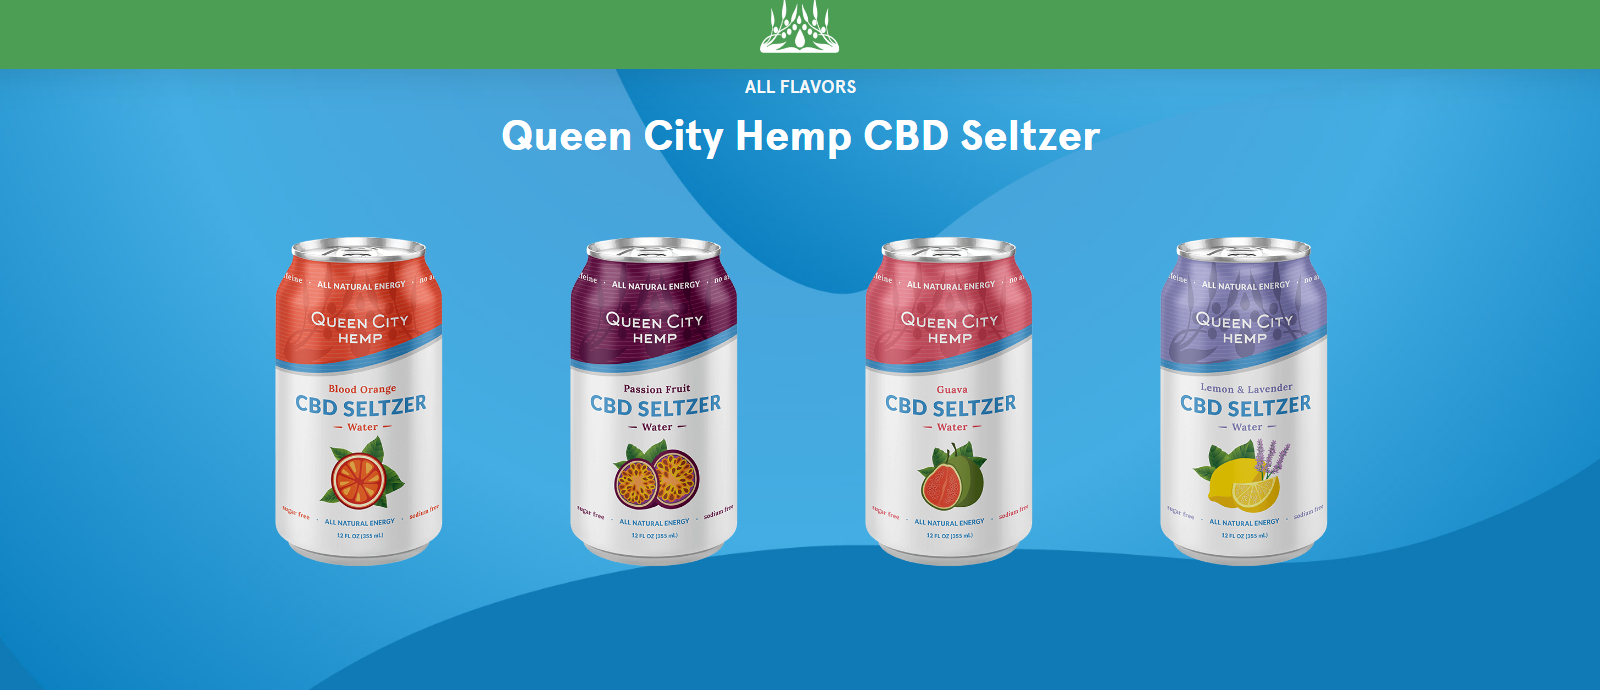 Queen City Hemp CBD Seltzer